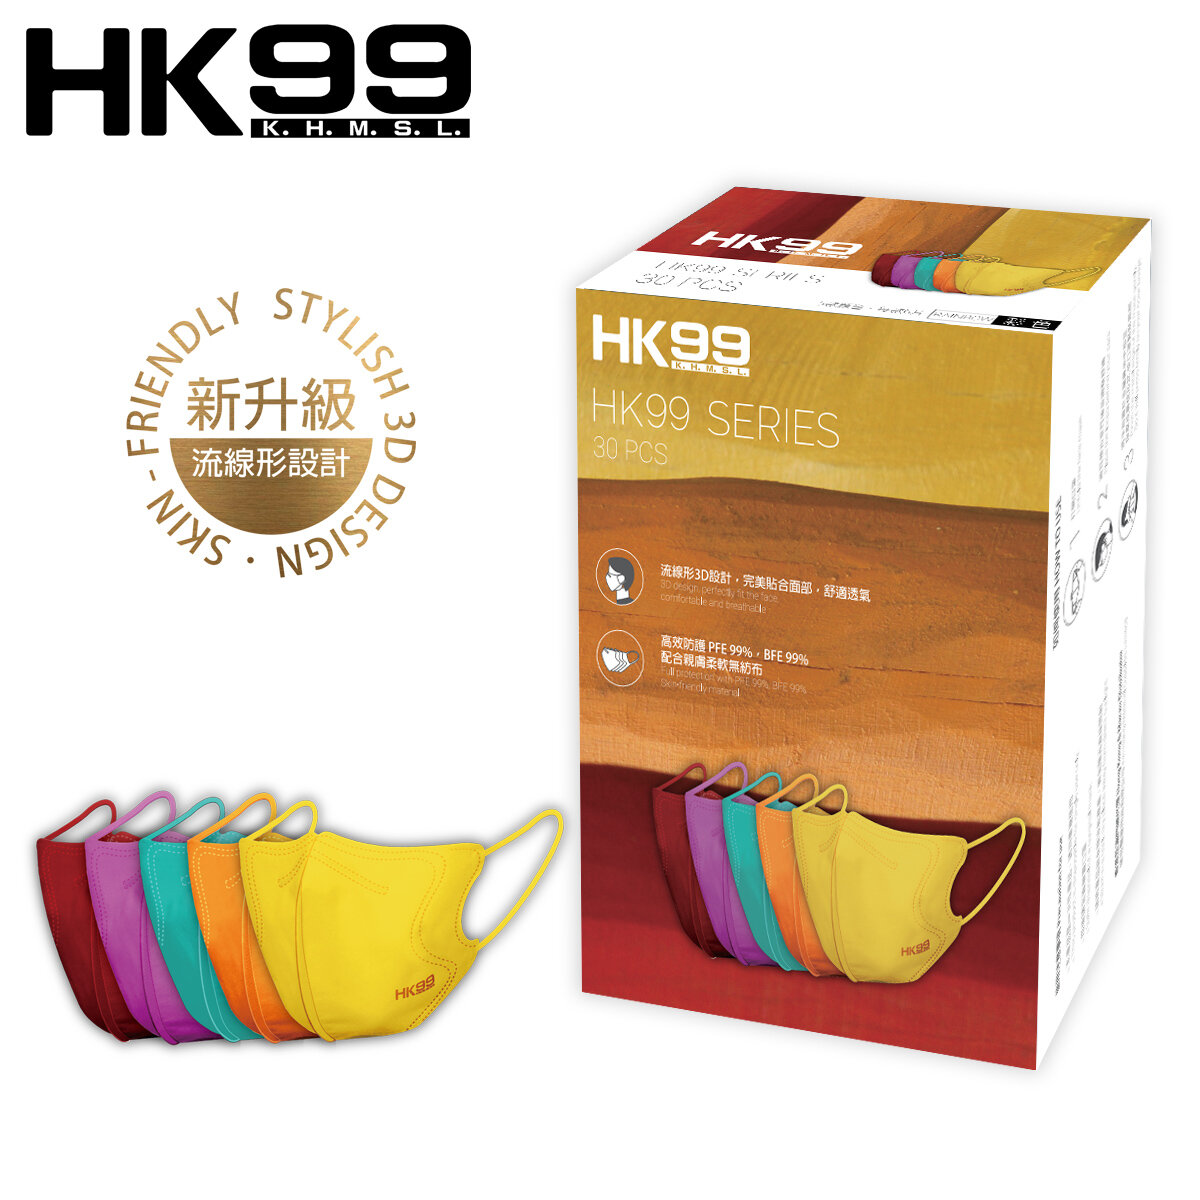 [香港製造] 新裝上市- HK99 3D 成人立體口罩 (油畫彩色) 30片裝  (適合一般成人面型) 4層口罩